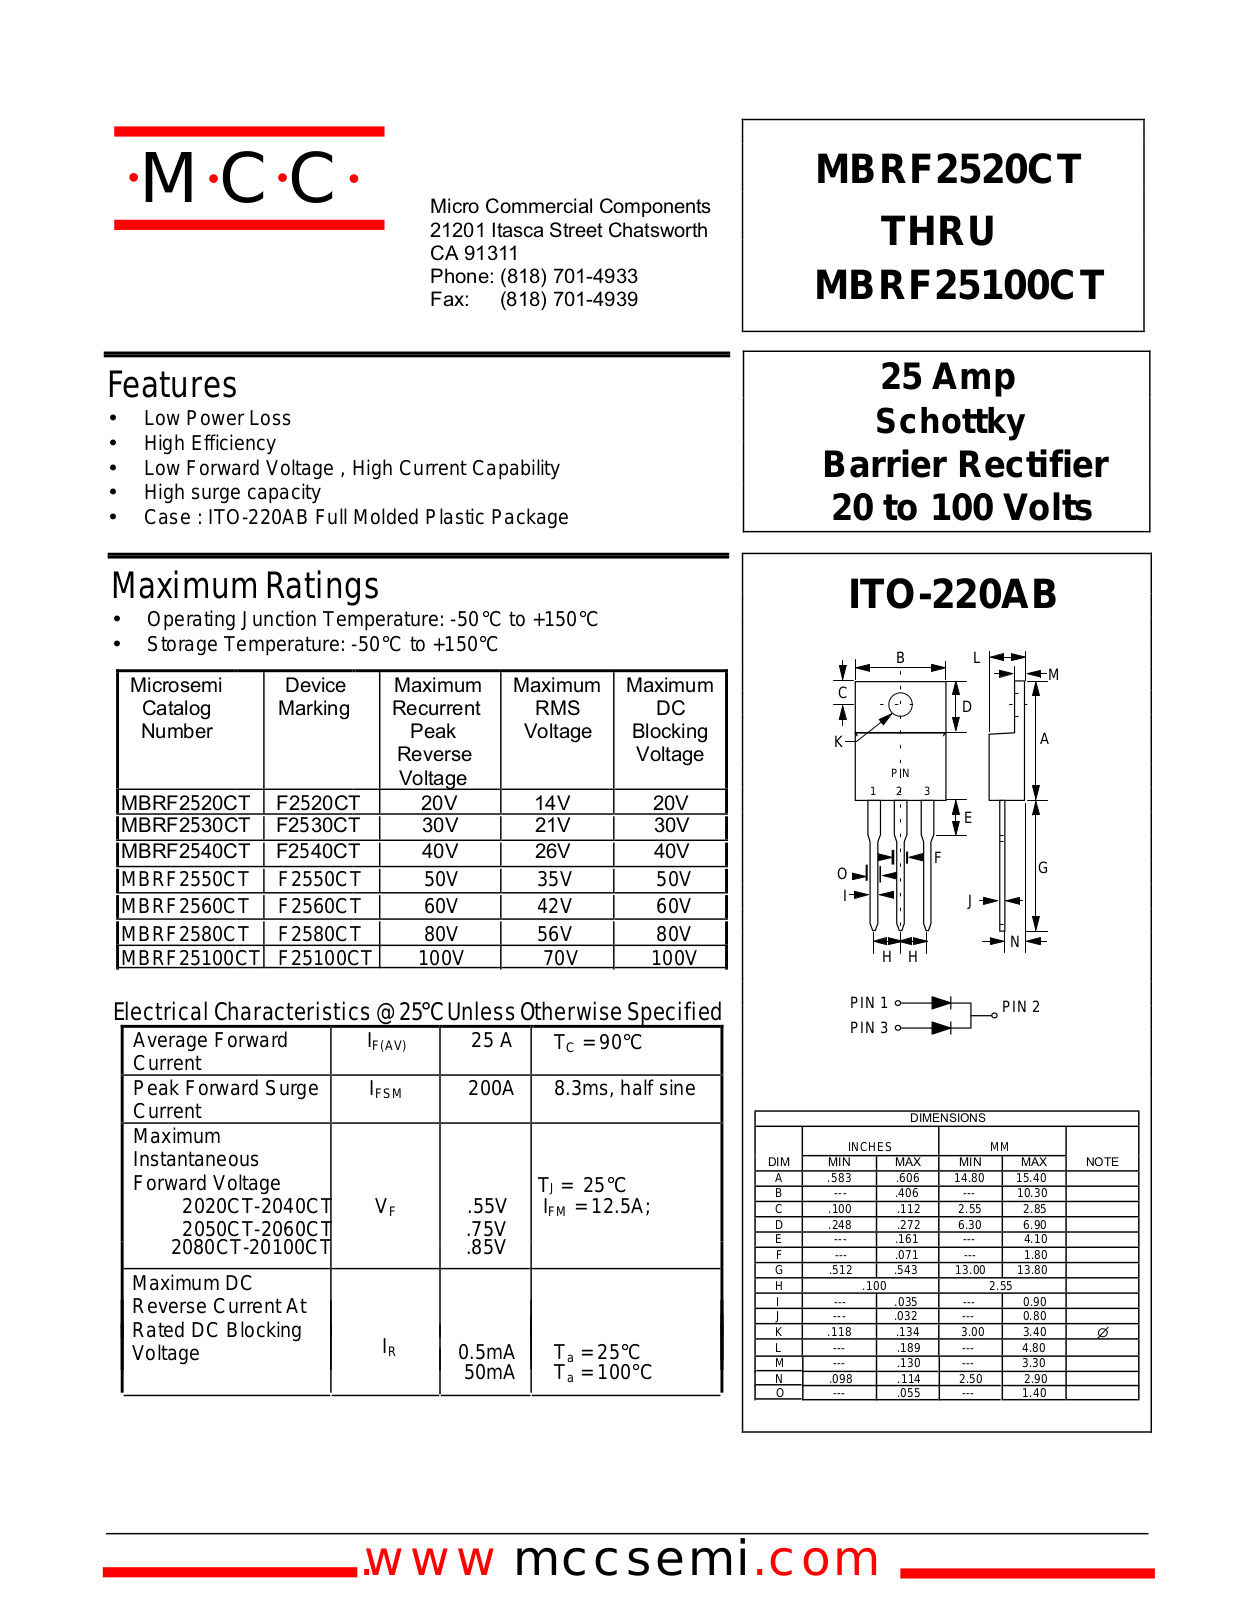 MCC MBRF2540CT, MBRF25100CT, MBRF2520CT, MBRF2530CT, MBRF2560CT Datasheet